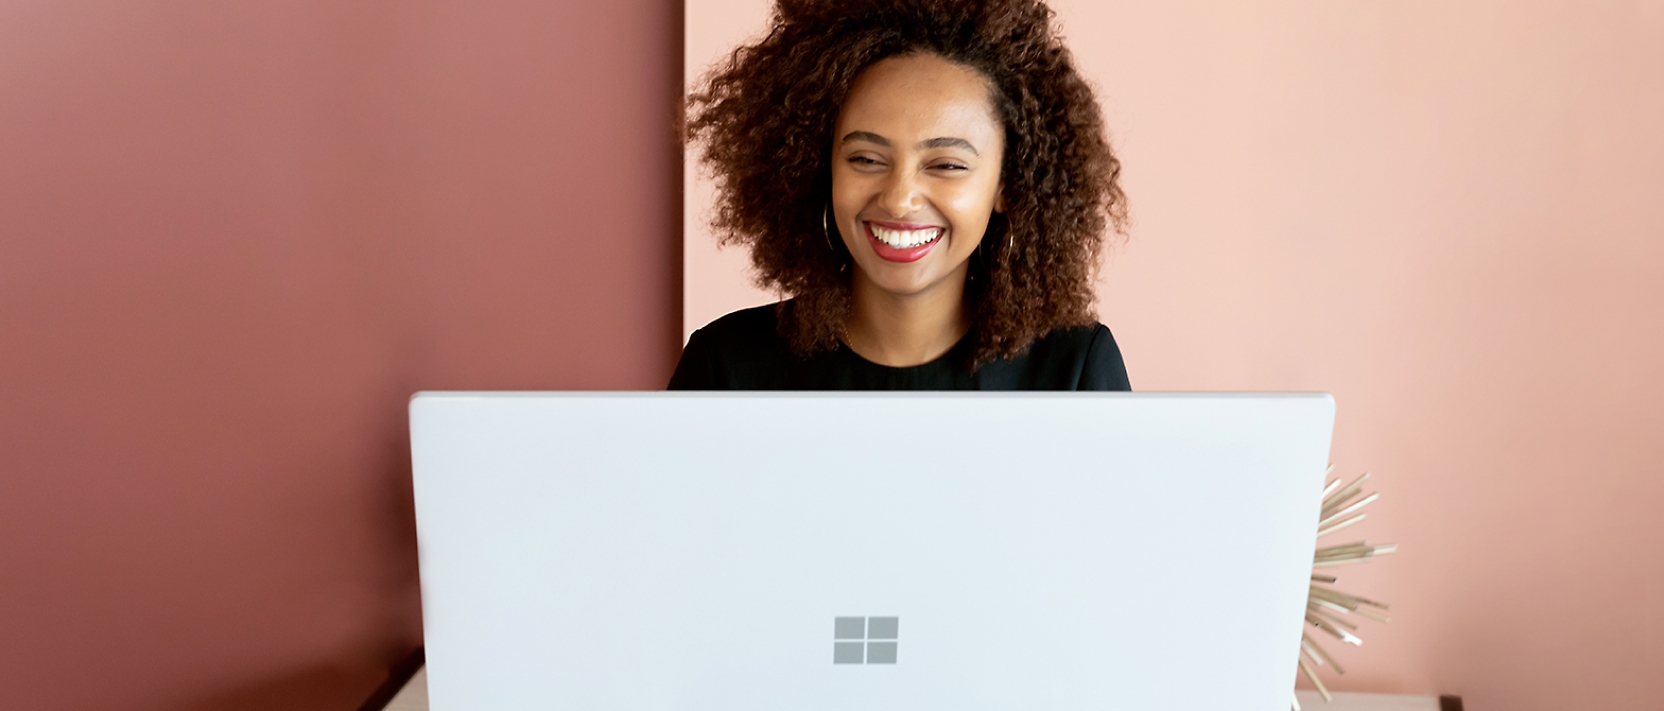 Una mujer sonríe mientras trabaja en un portátil.